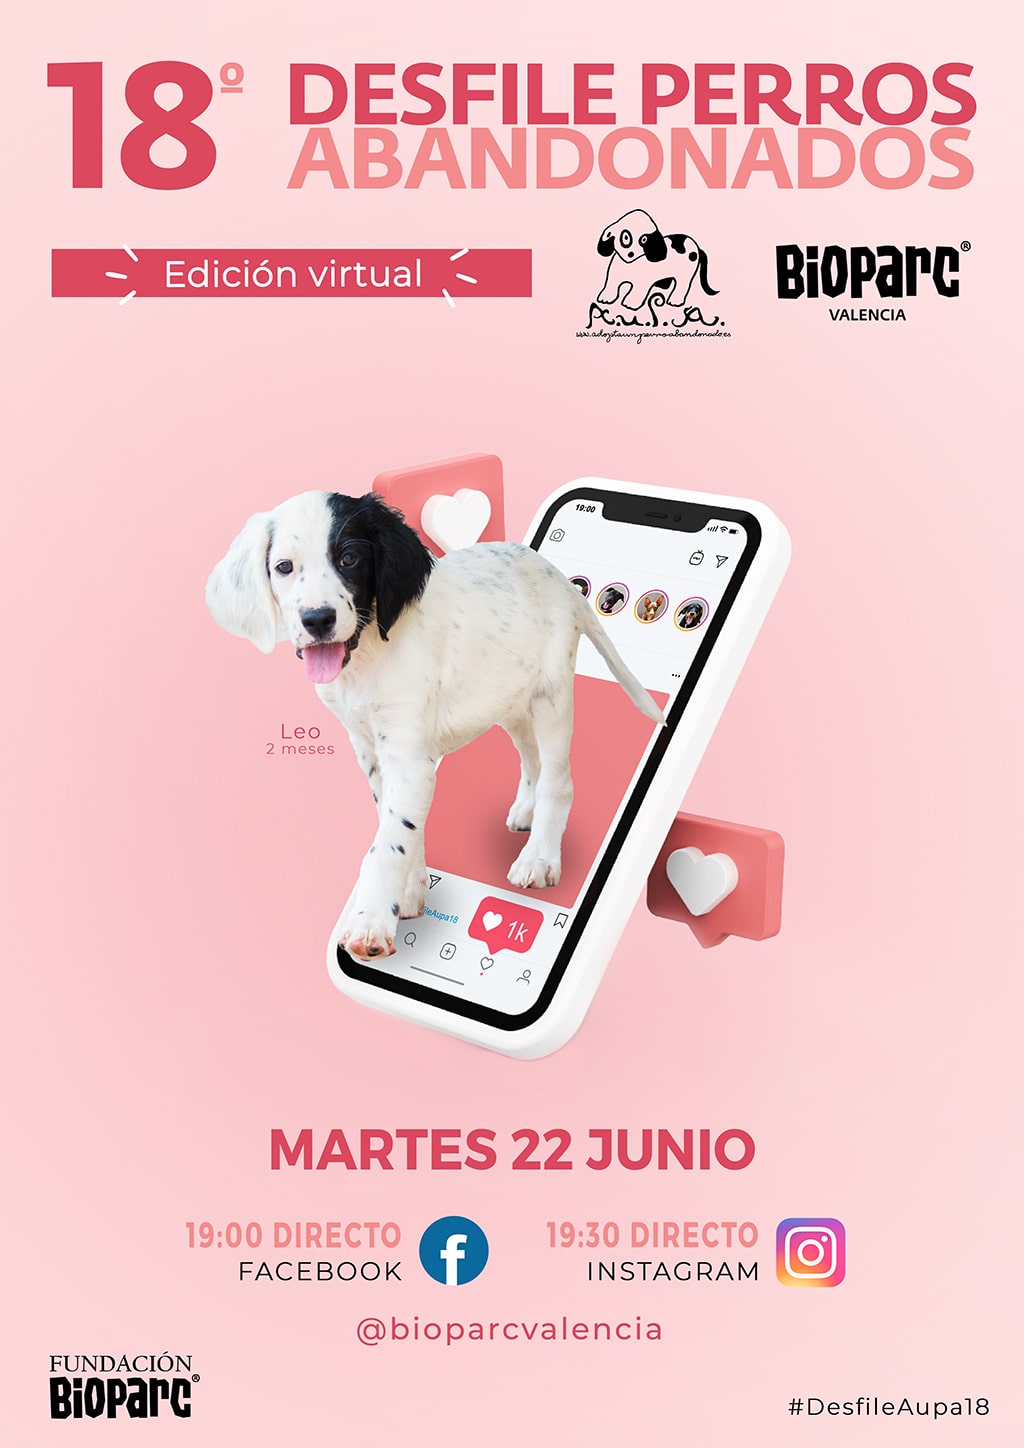 El Desfile de perros abandonados A.U.P.A y BIOPARC Valencia será el 22 de junio